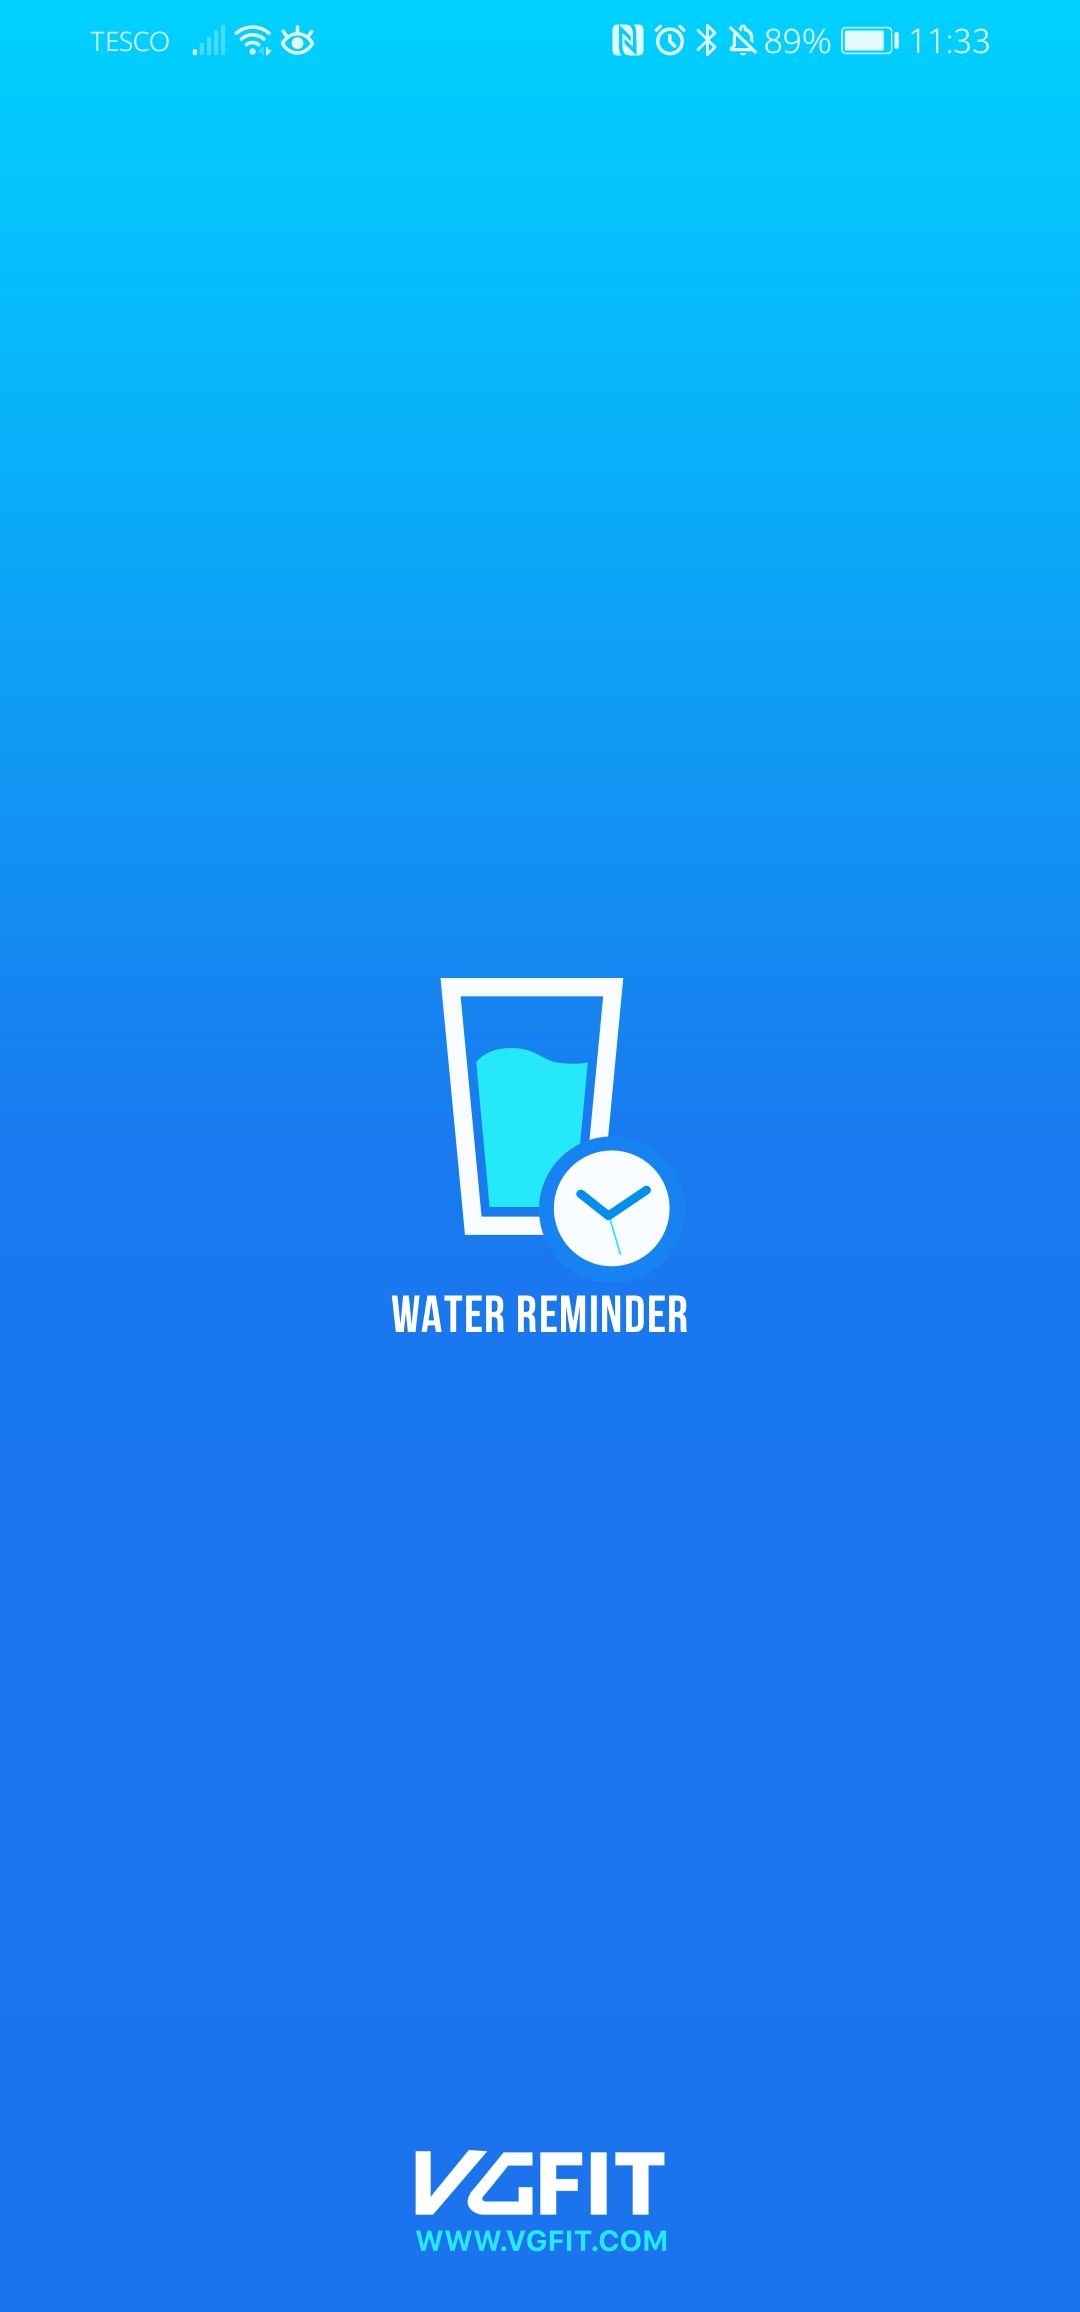 Water Reminder app